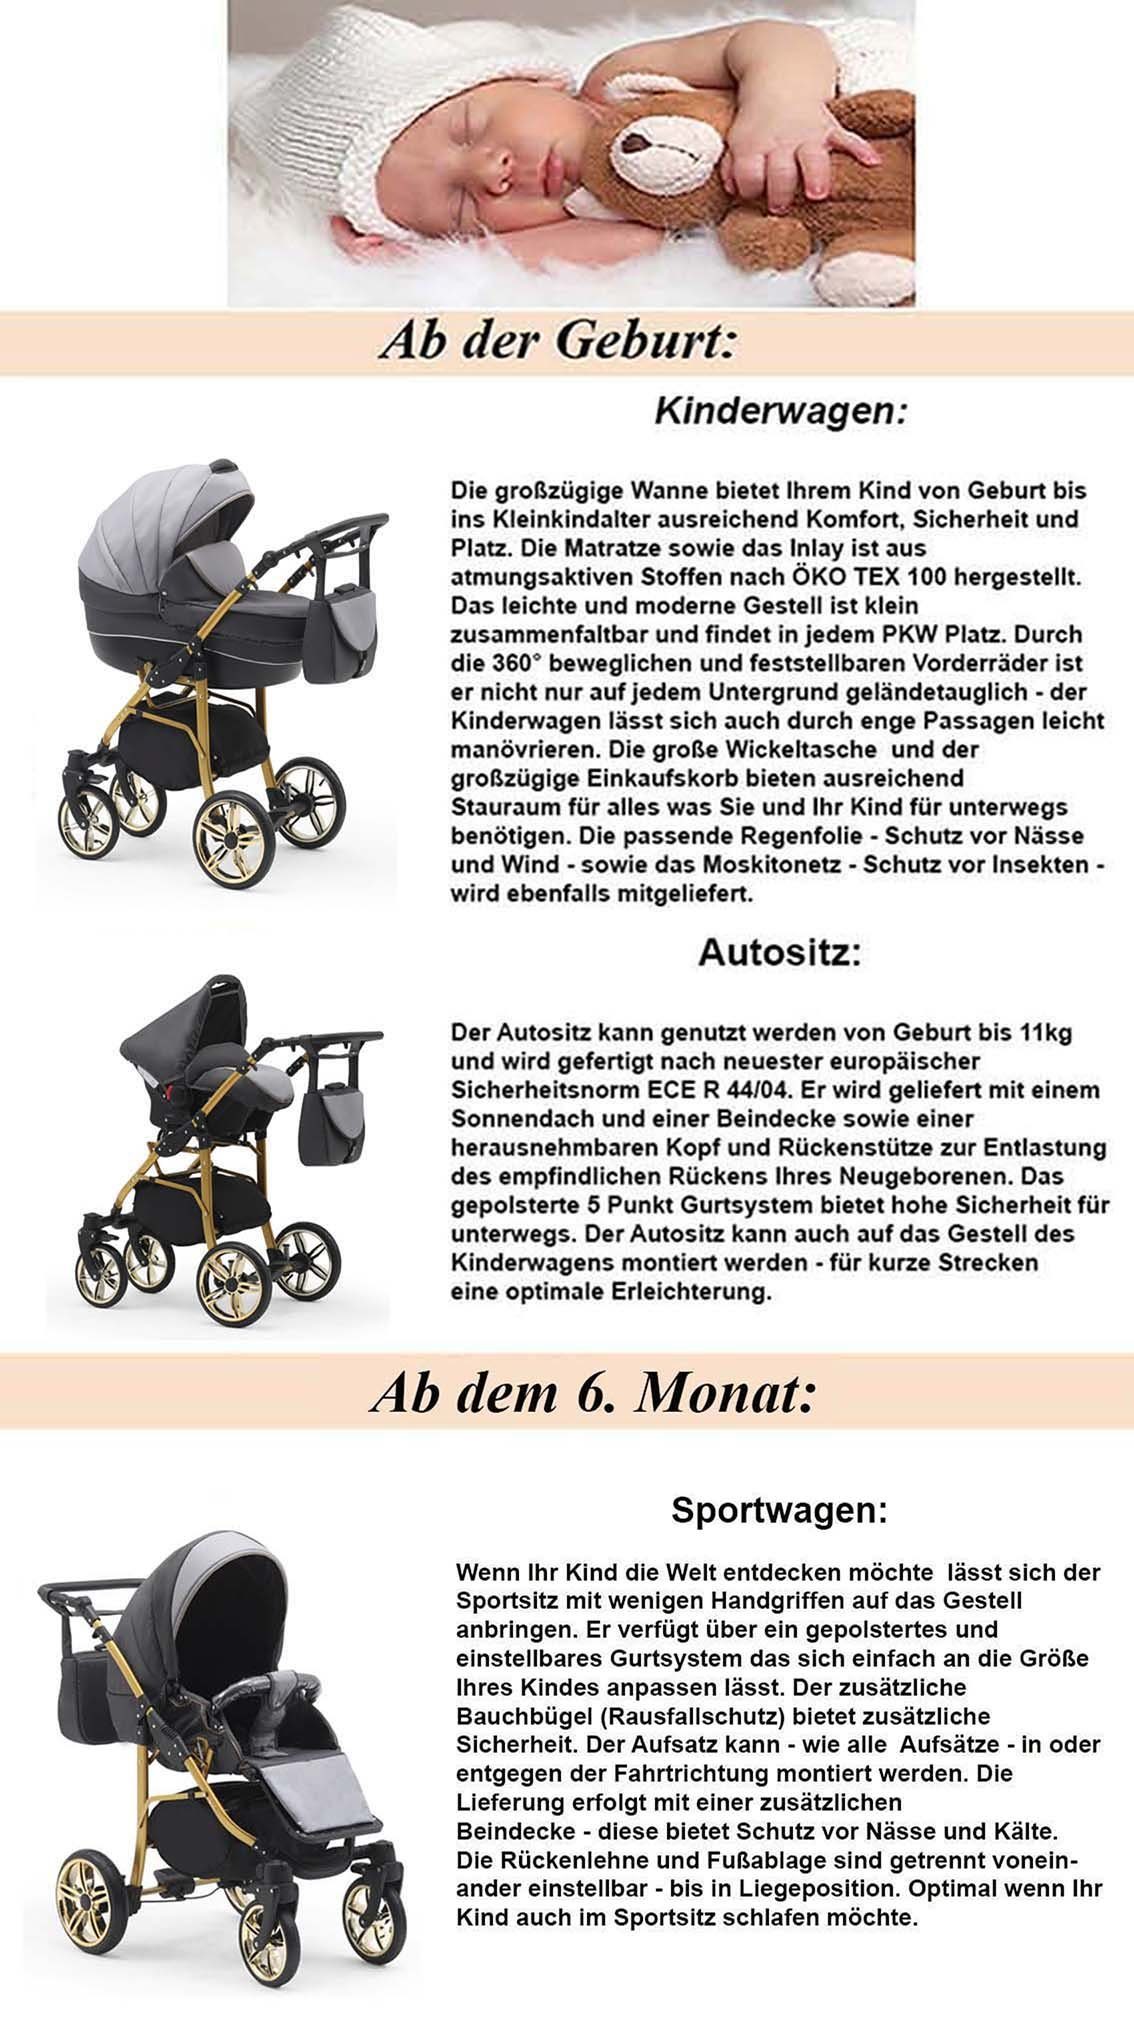 Weiß-Schwarz-Weiß 1 in babies-on-wheels Kombi-Kinderwagen - Farben Teile Gold - Kinderwagen-Set in 13 46 Cosmo 2